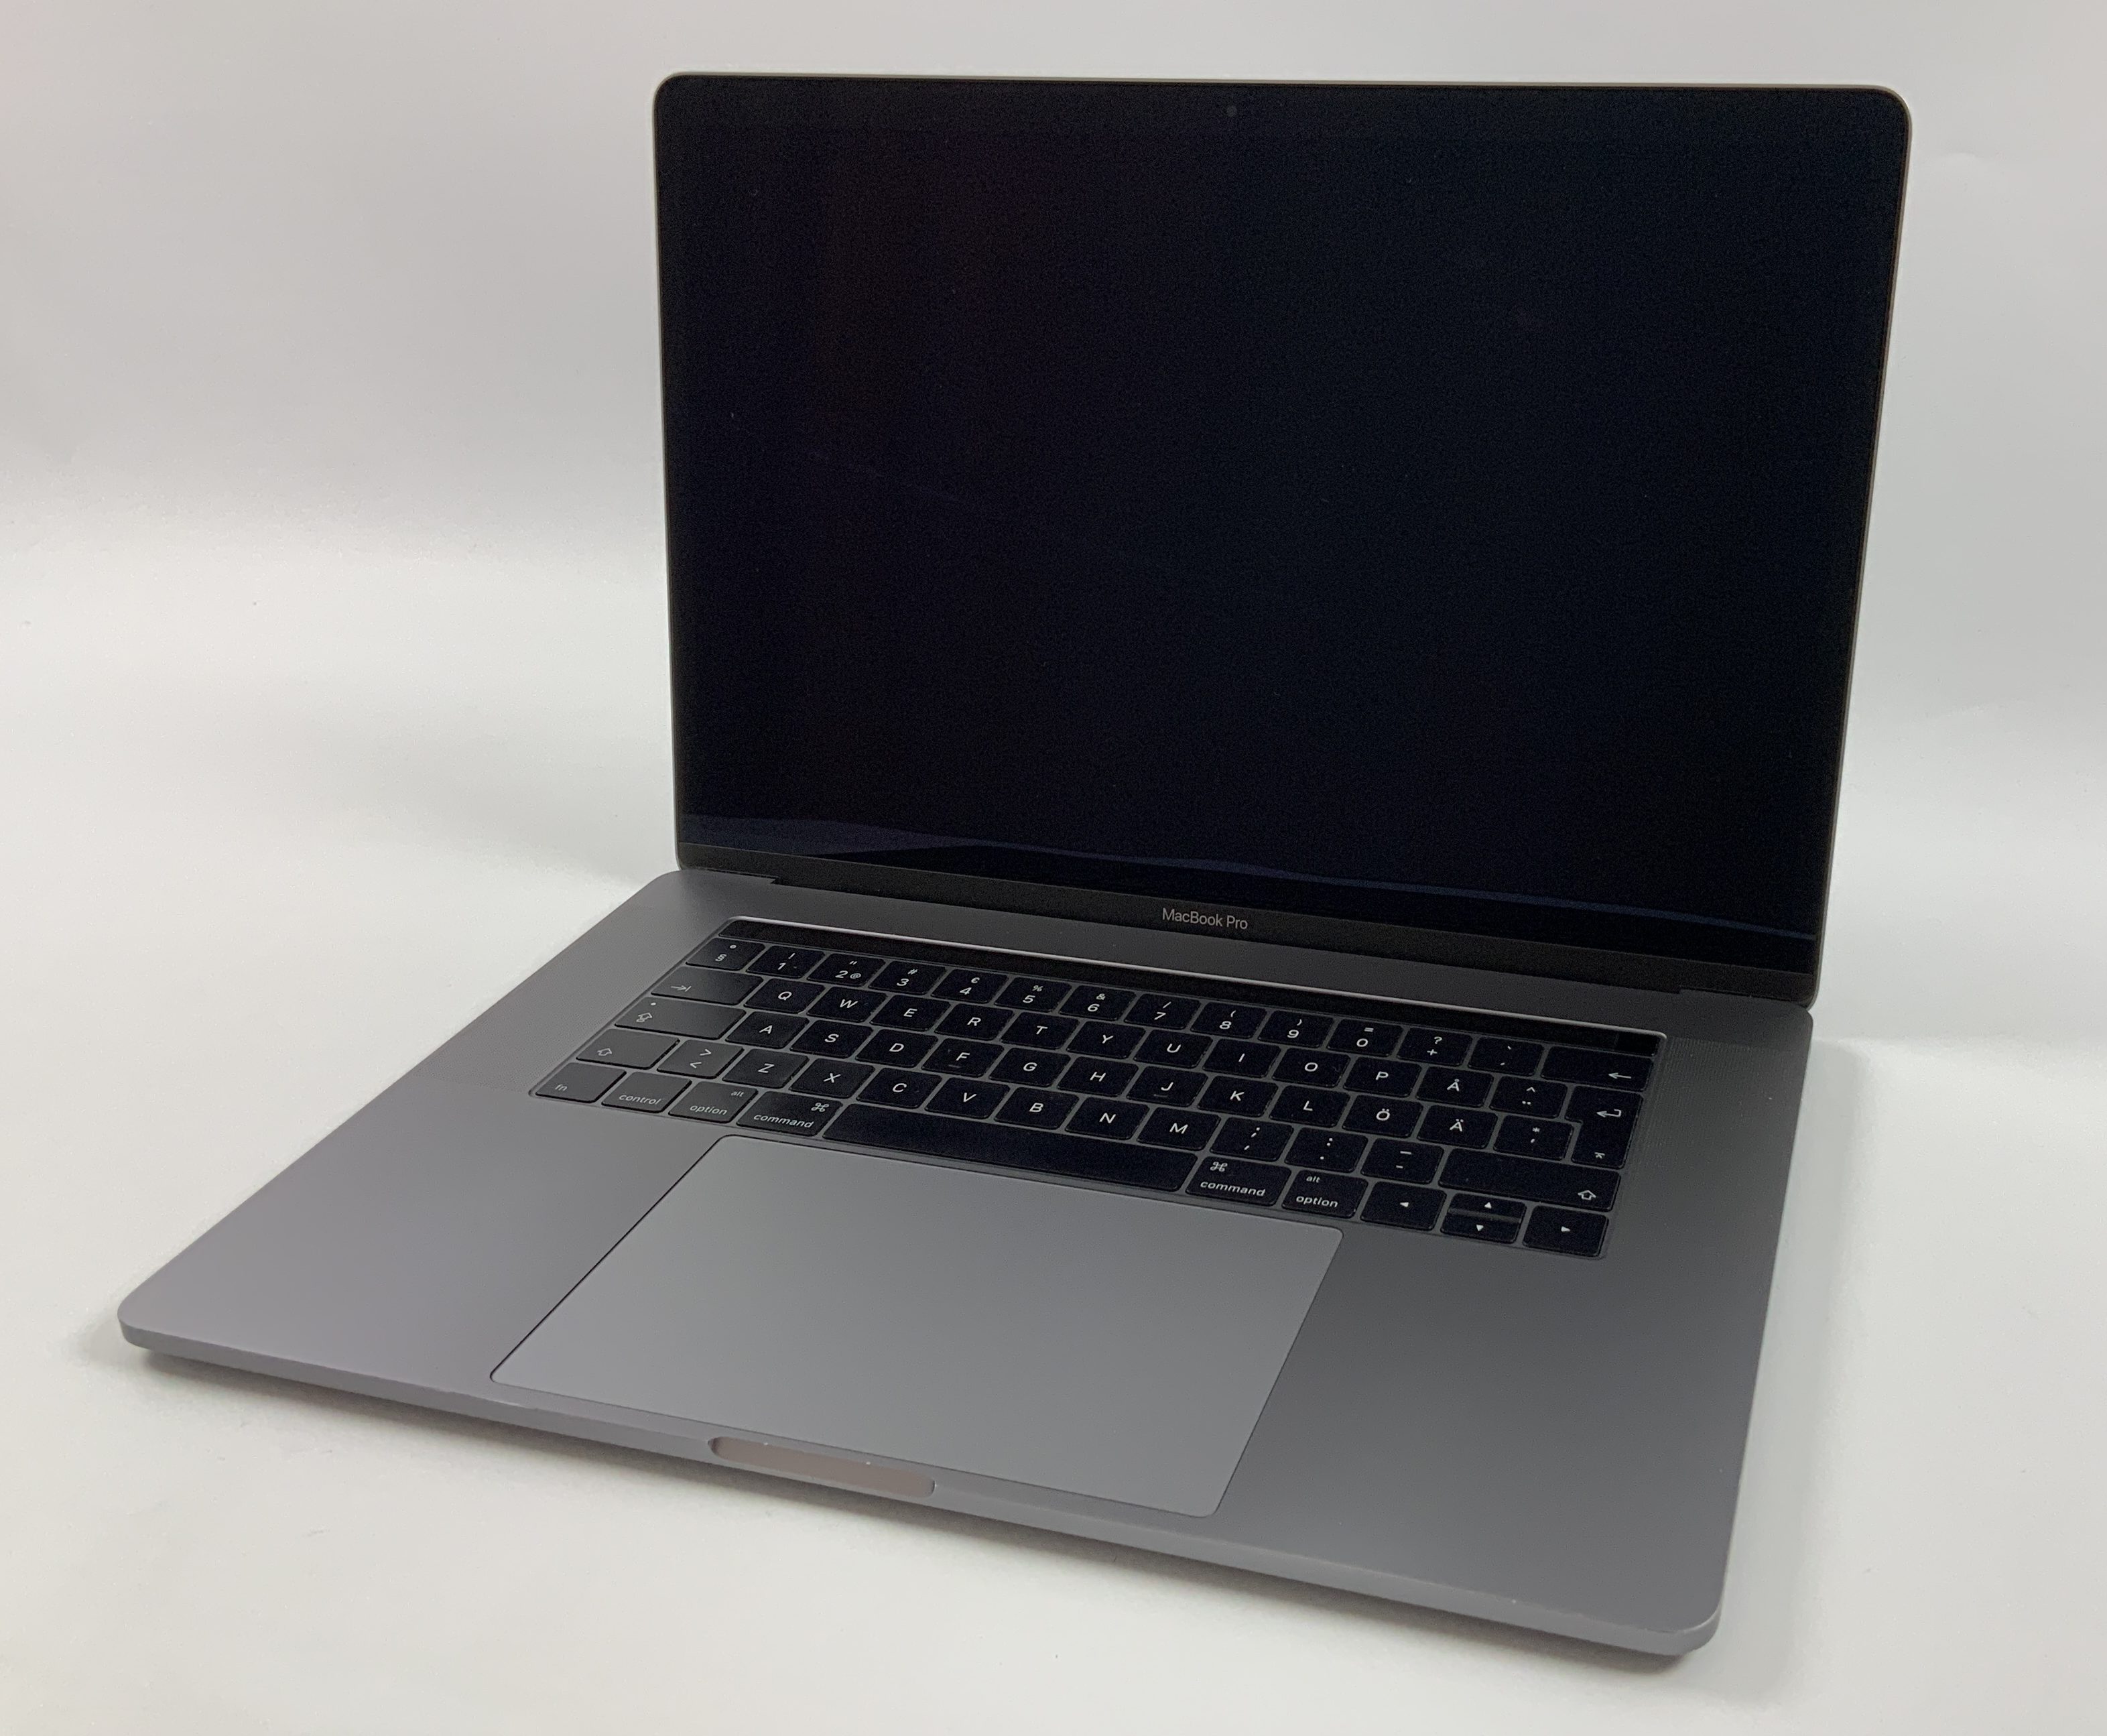 MacBook Pro 15" Touch Bar Late 2016 (Intel Quad-Core i7 2.7 GHz 16 GB RAM 256 GB SSD), Space Gray, Intel Quad-Core i7 2.7 GHz, 16 GB RAM, 256 GB SSD, Bild 1